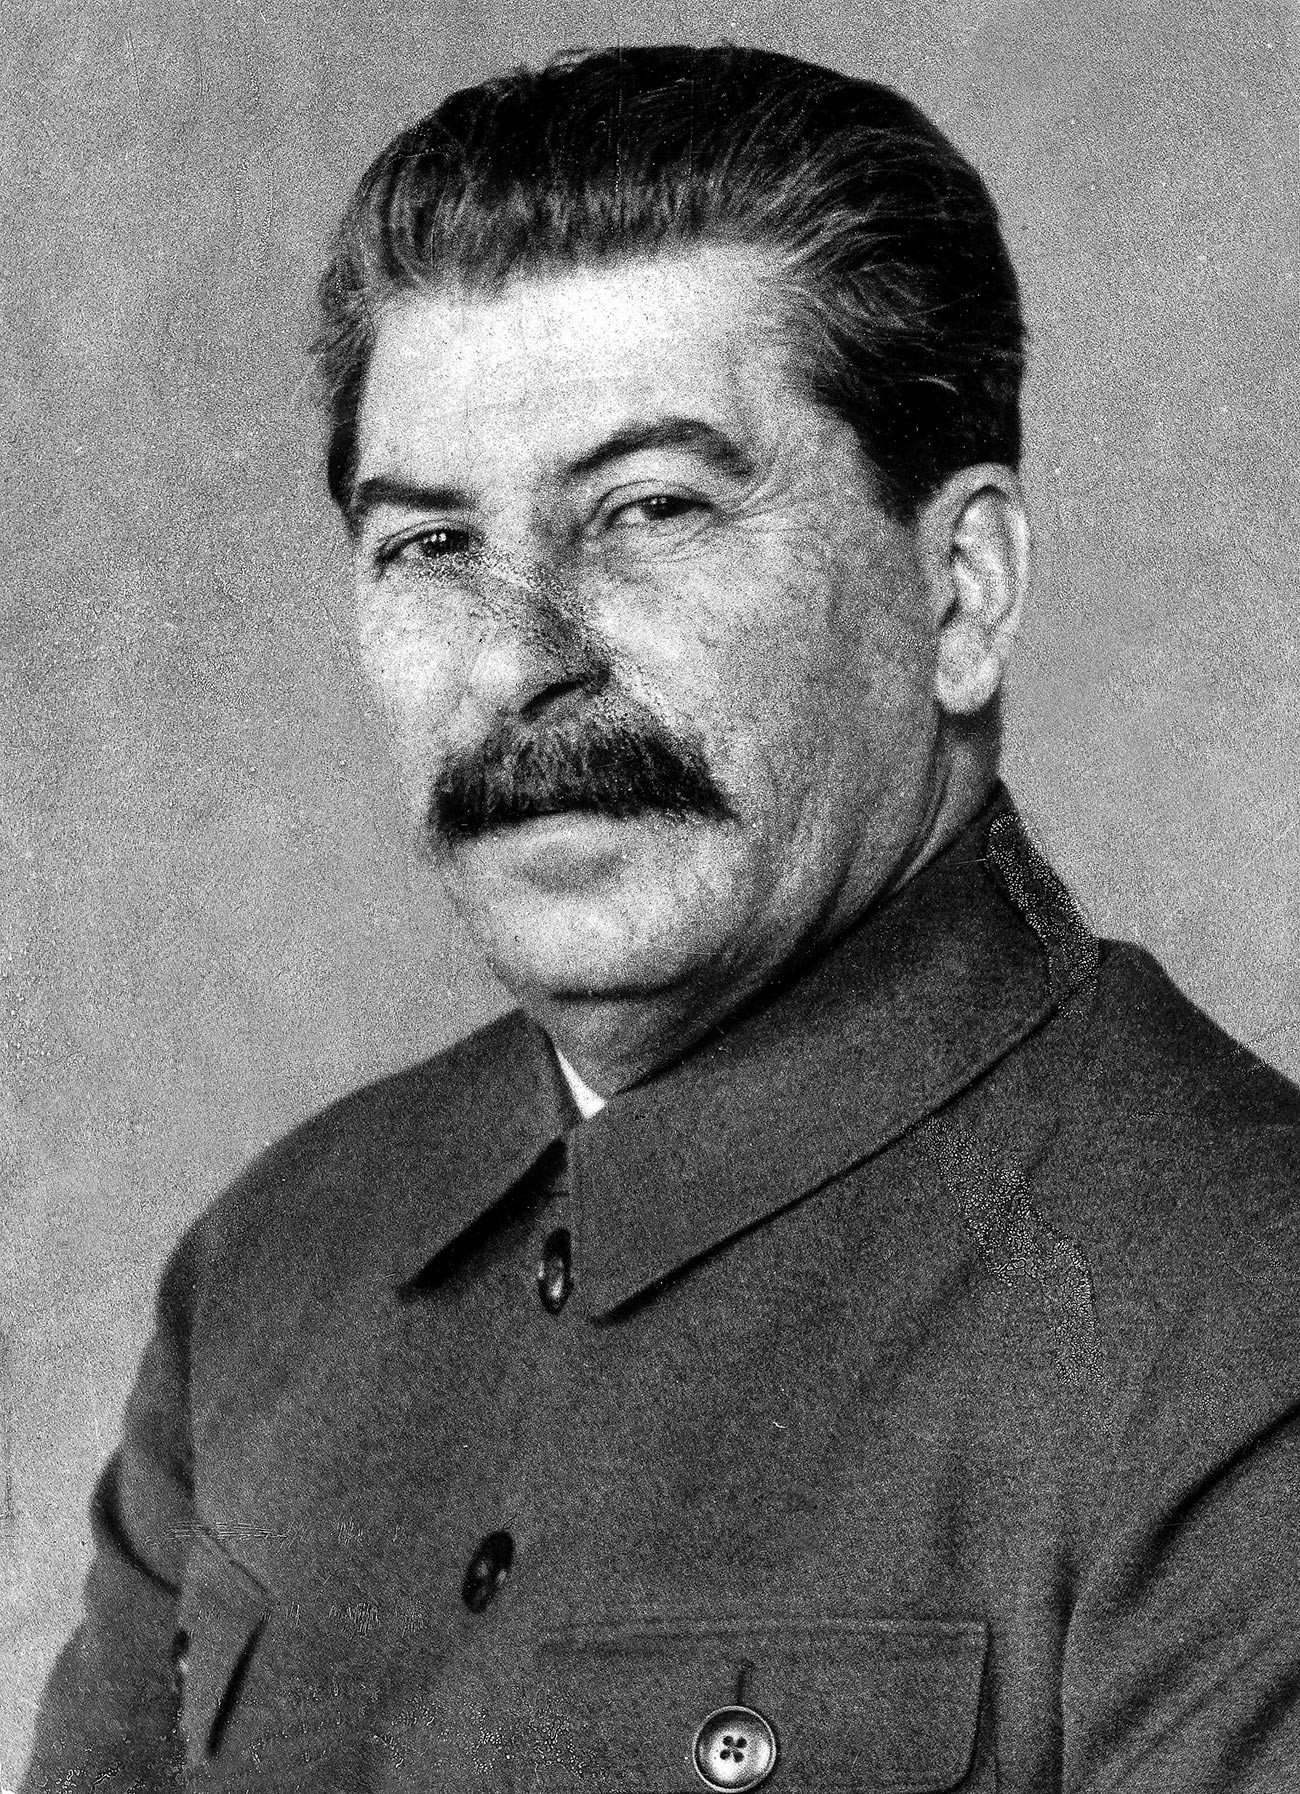 Dies ist eines der seltenen Fotos von Stalin, auf denen Pockennarben auf seinem Gesicht zu sehen sind.